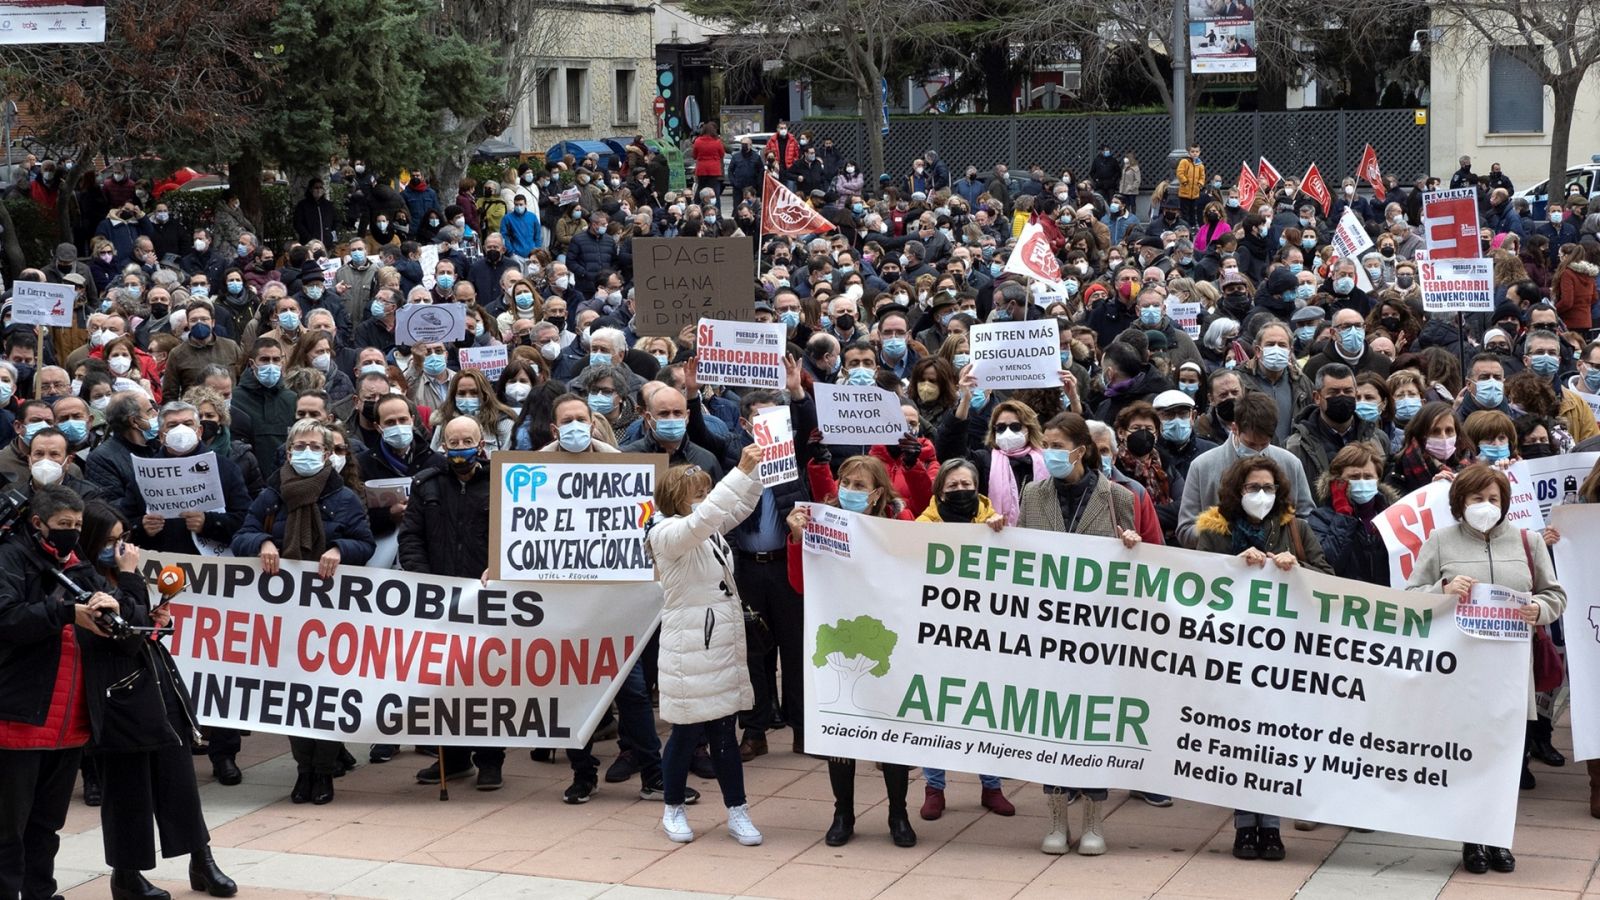 Manifestación contra el cierre de la línea de ferrocarril convencional Aranjuez-Cuenca-Utiel.